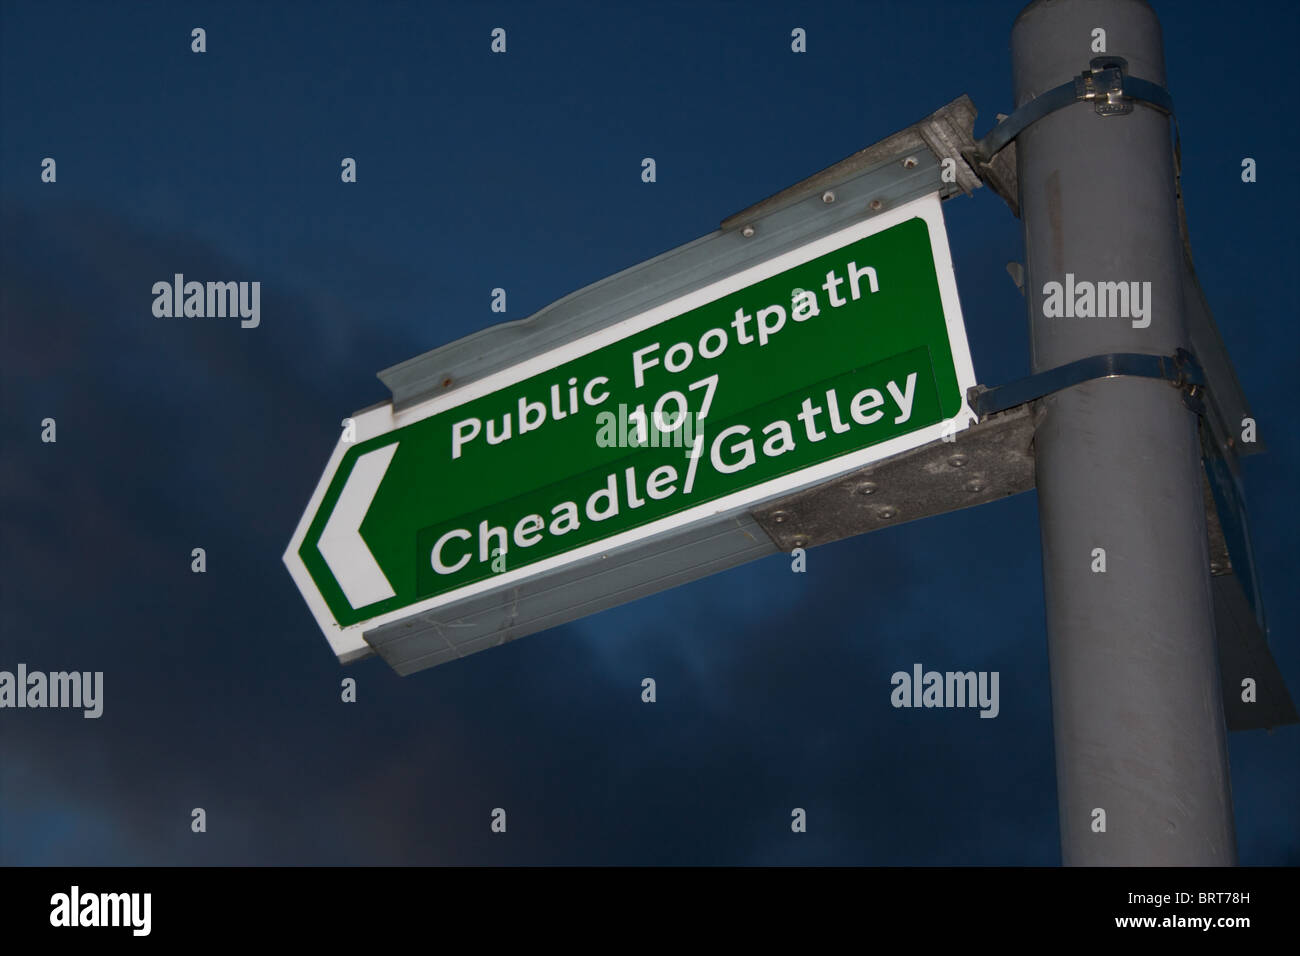 Öffentlichen Fußweg Zeichen für Cheadle/Gatley (Route 107) Stockfoto